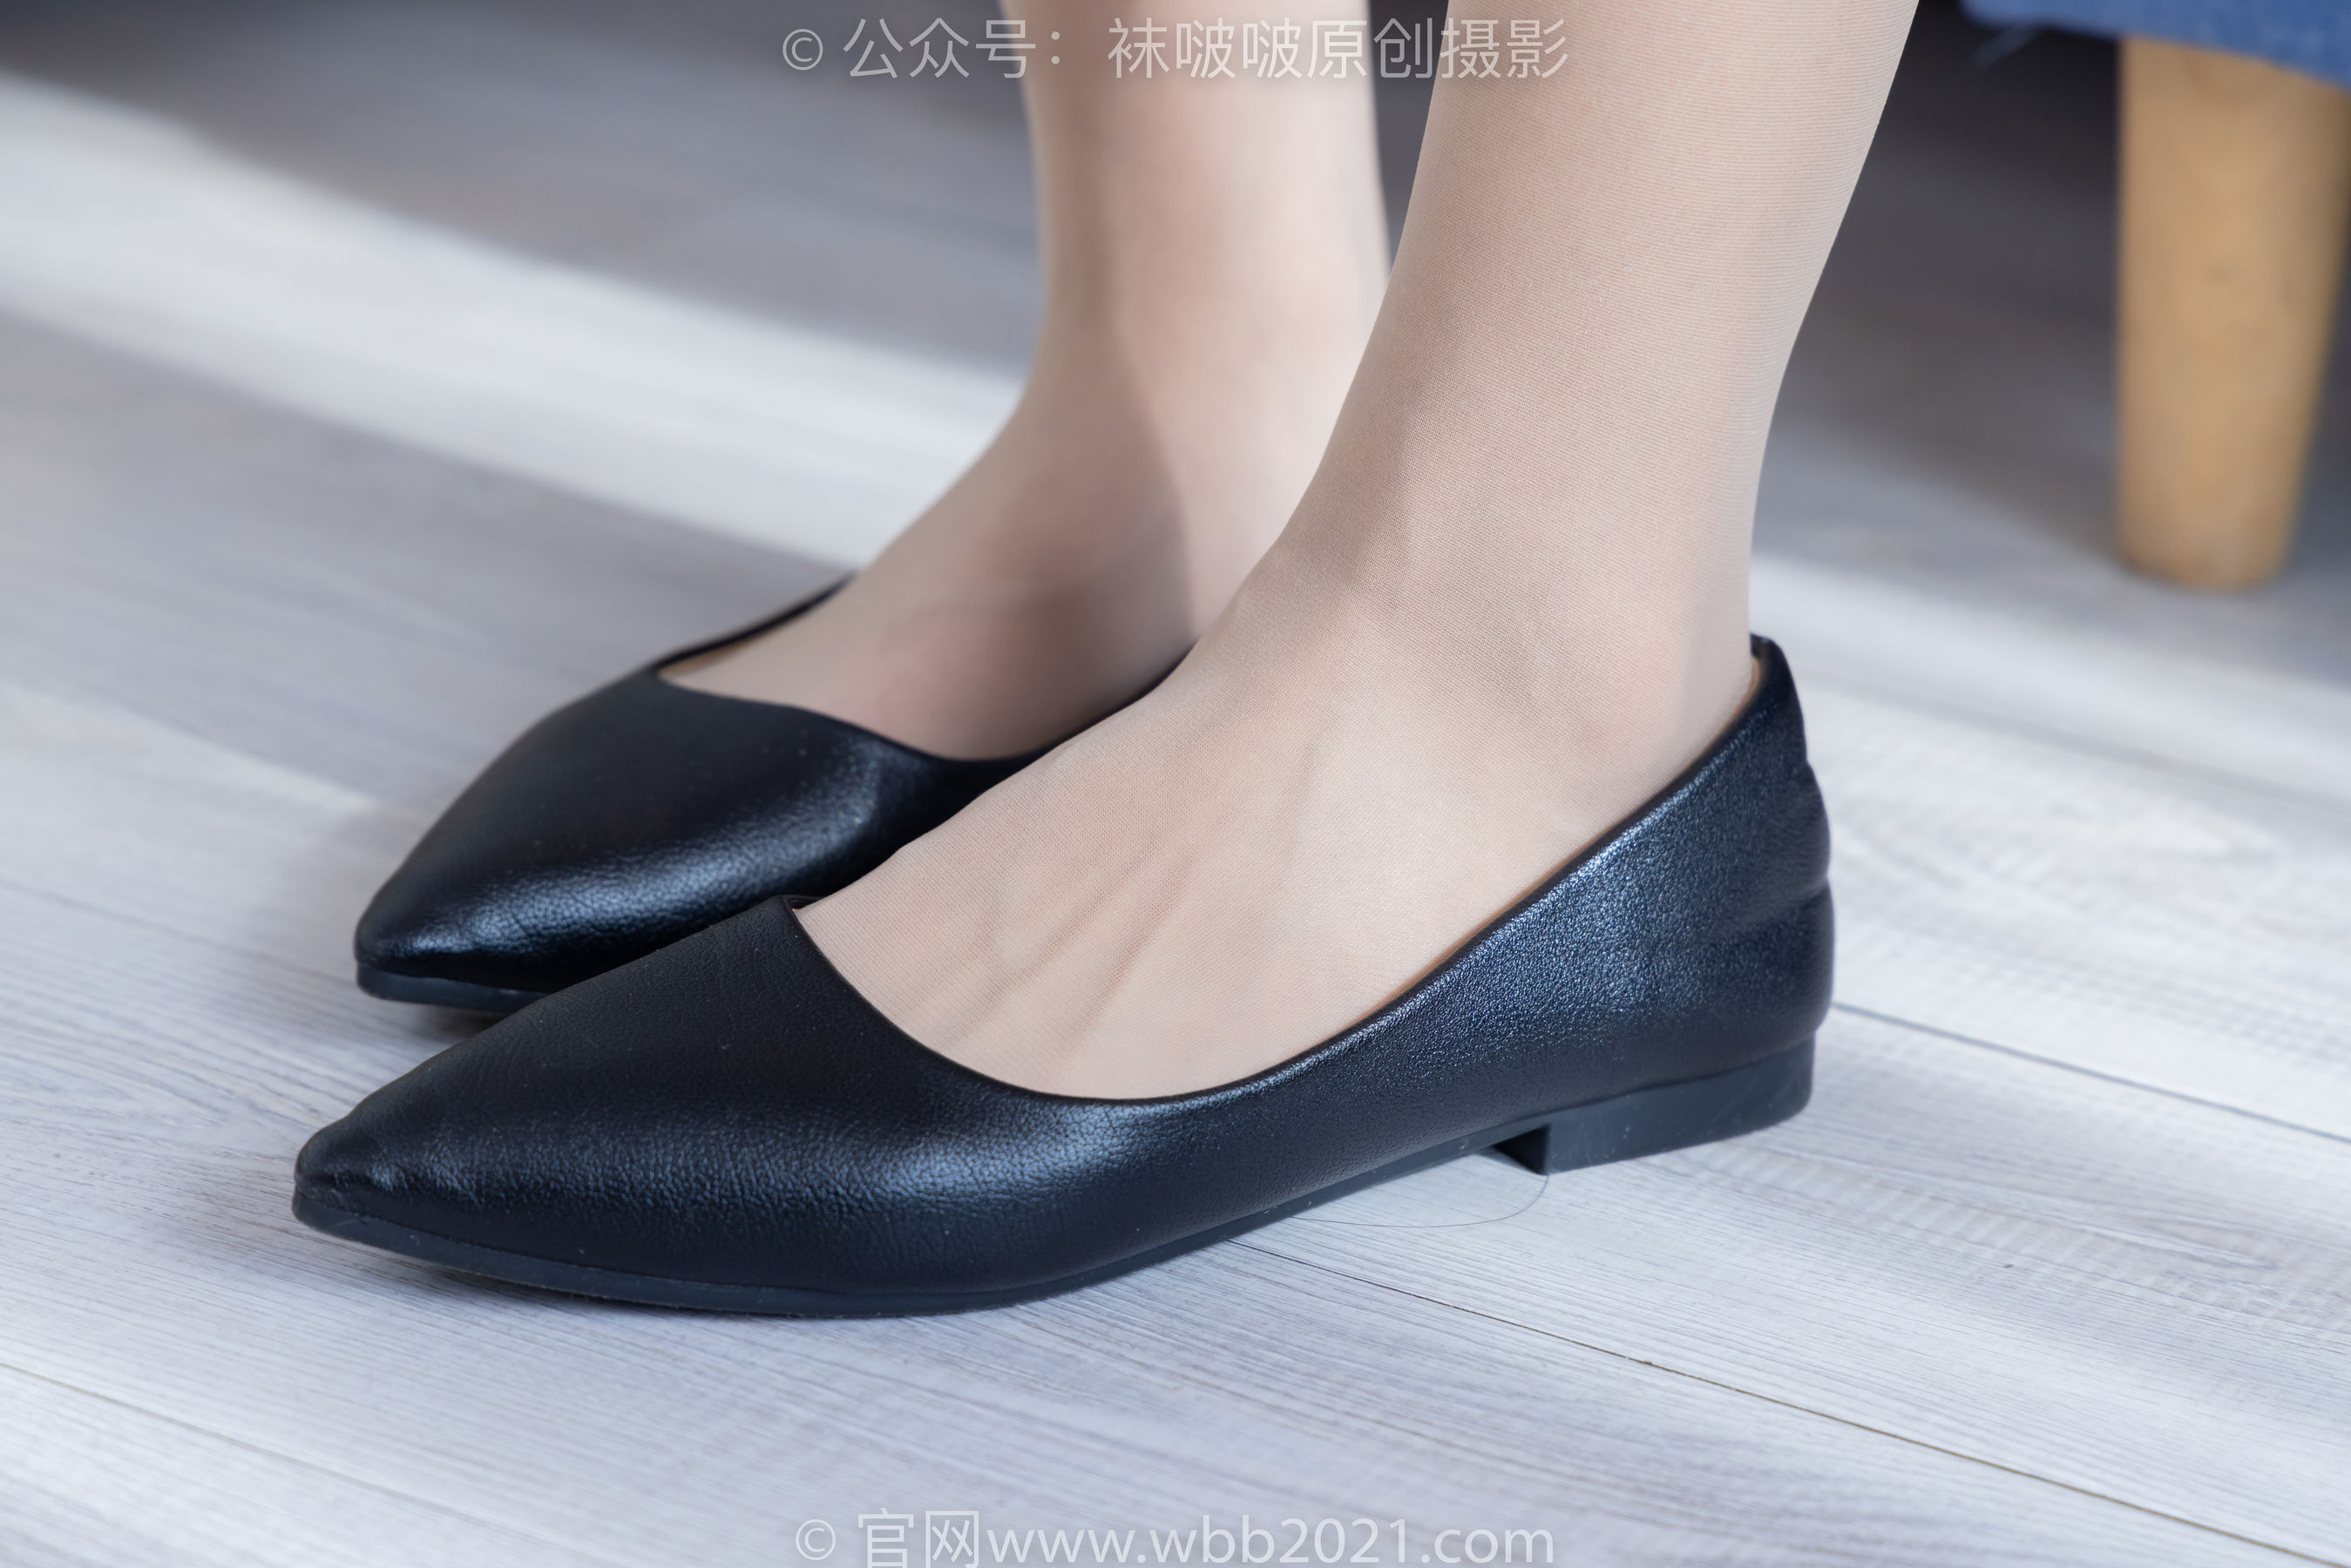 BoBoSocks袜啵啵 No.342 奶油 -平底鞋、肉丝、老头乐挠脚心剧情/(140P)